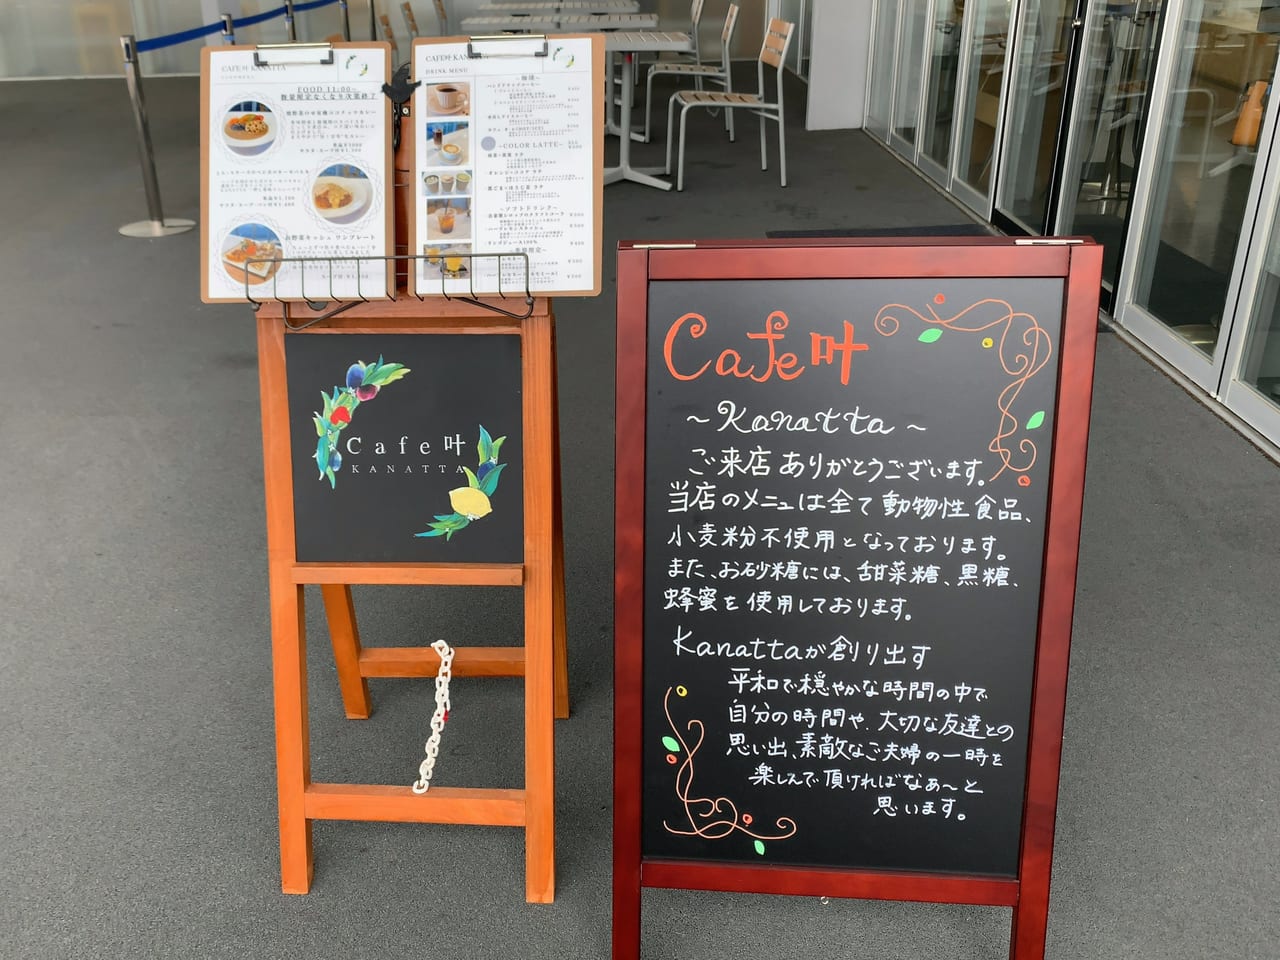 Cafe 叶 kanattaオープン02